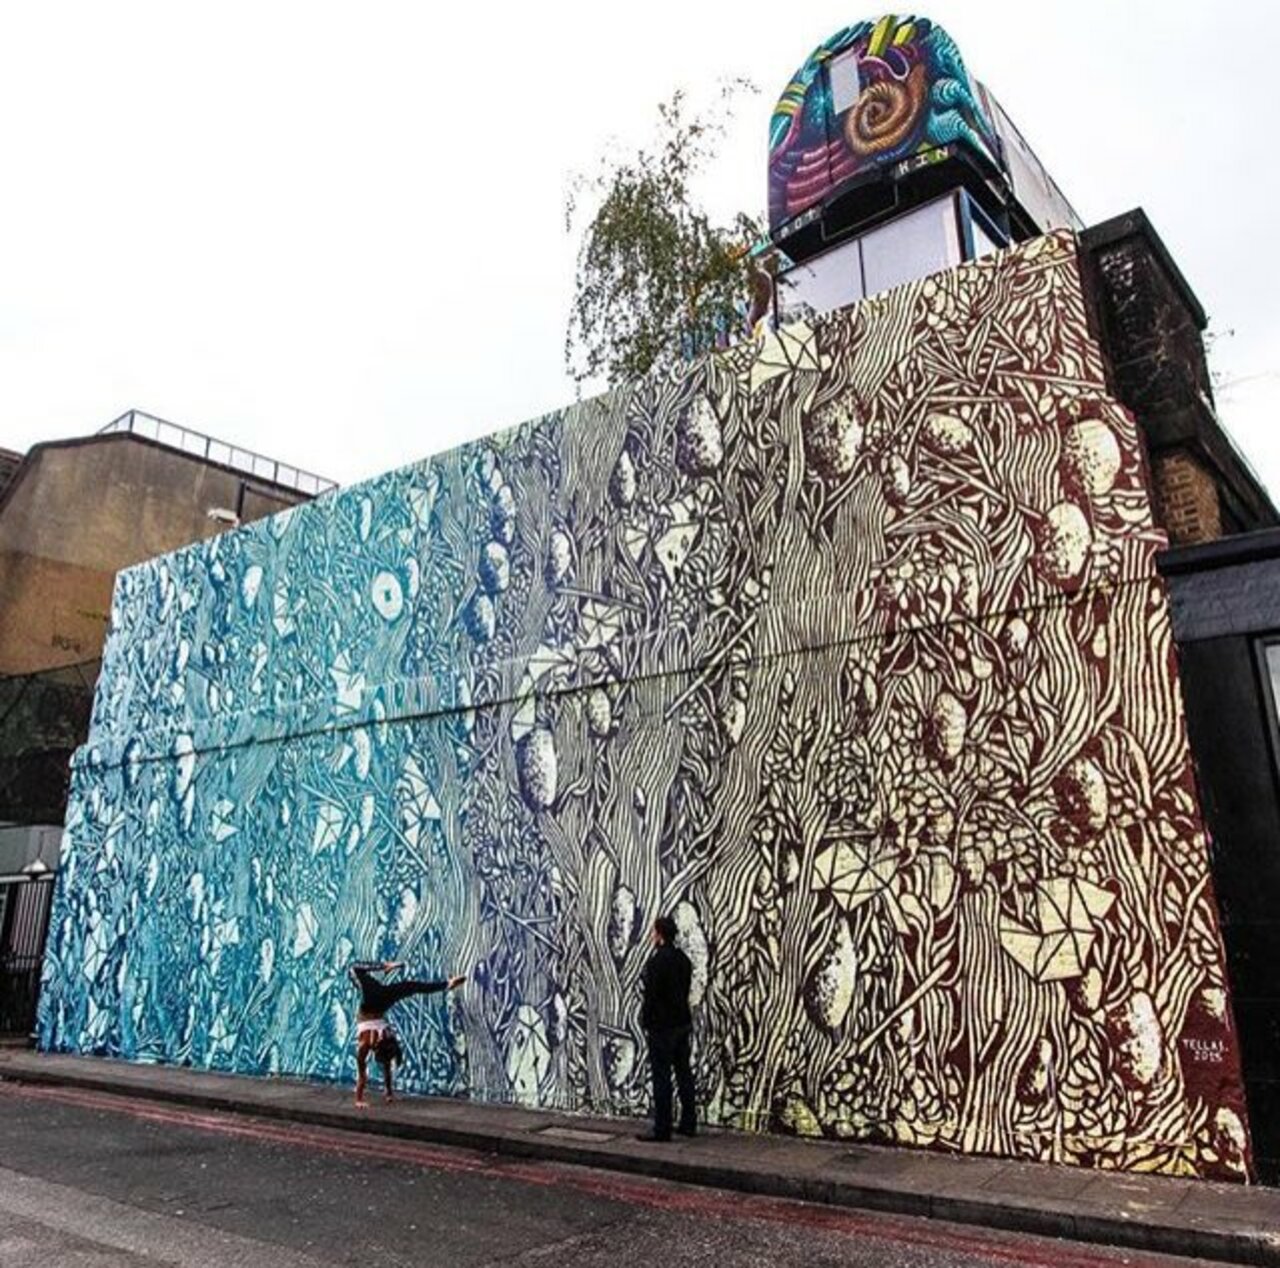 New Street Art by Tellas in Shoreditch London 

#art #graffiti #mural #streetart https://t.co/5jODfe2L12